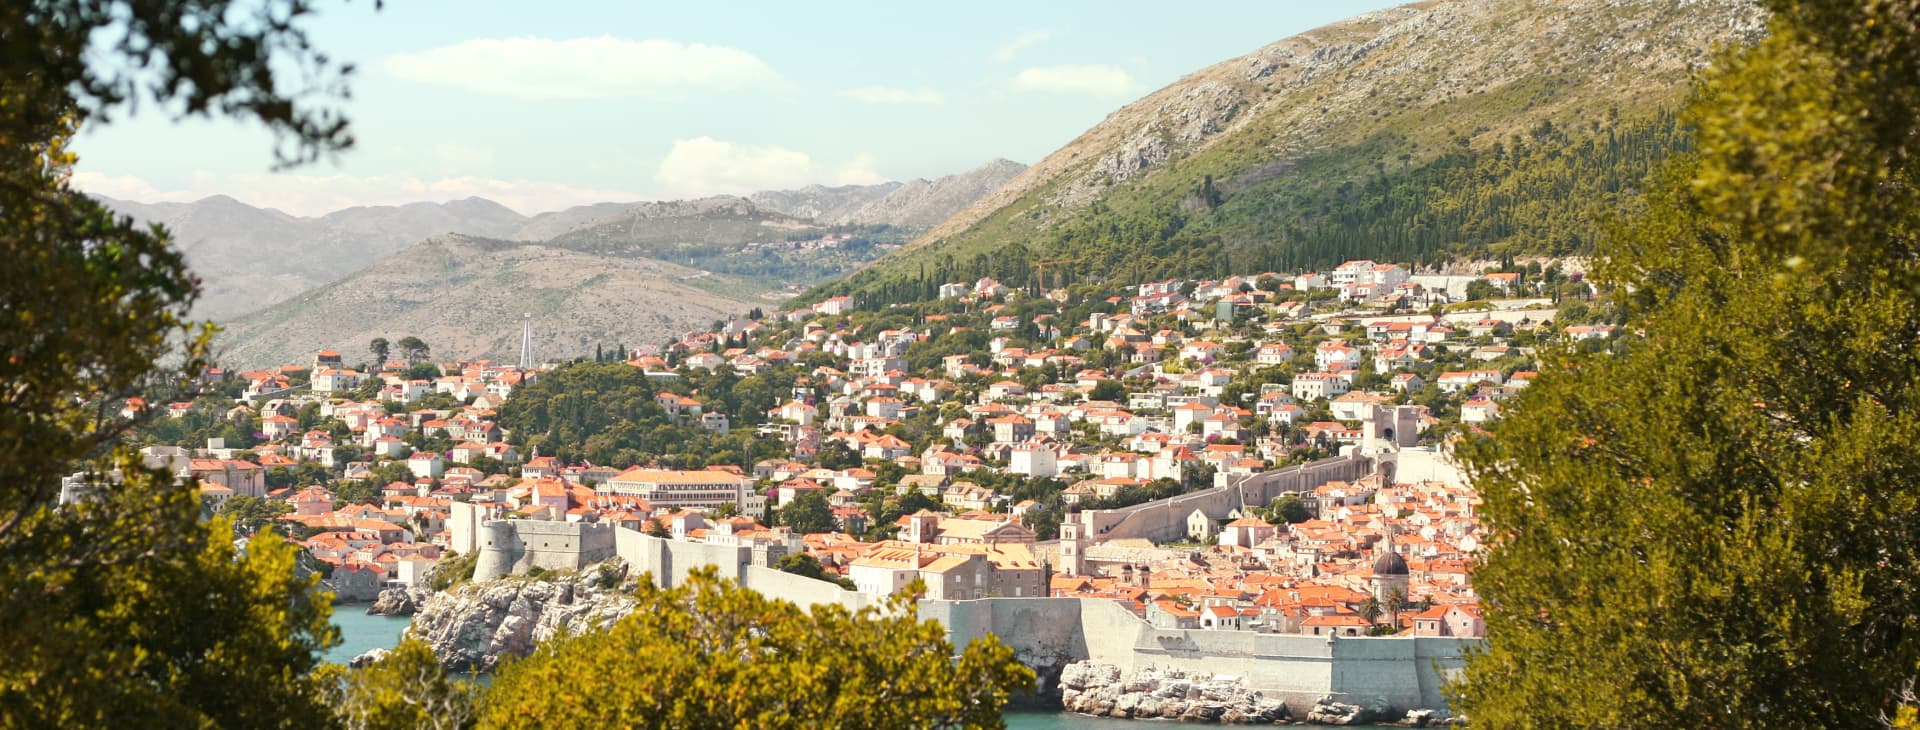 Heldagsudflugt til Dubrovnik